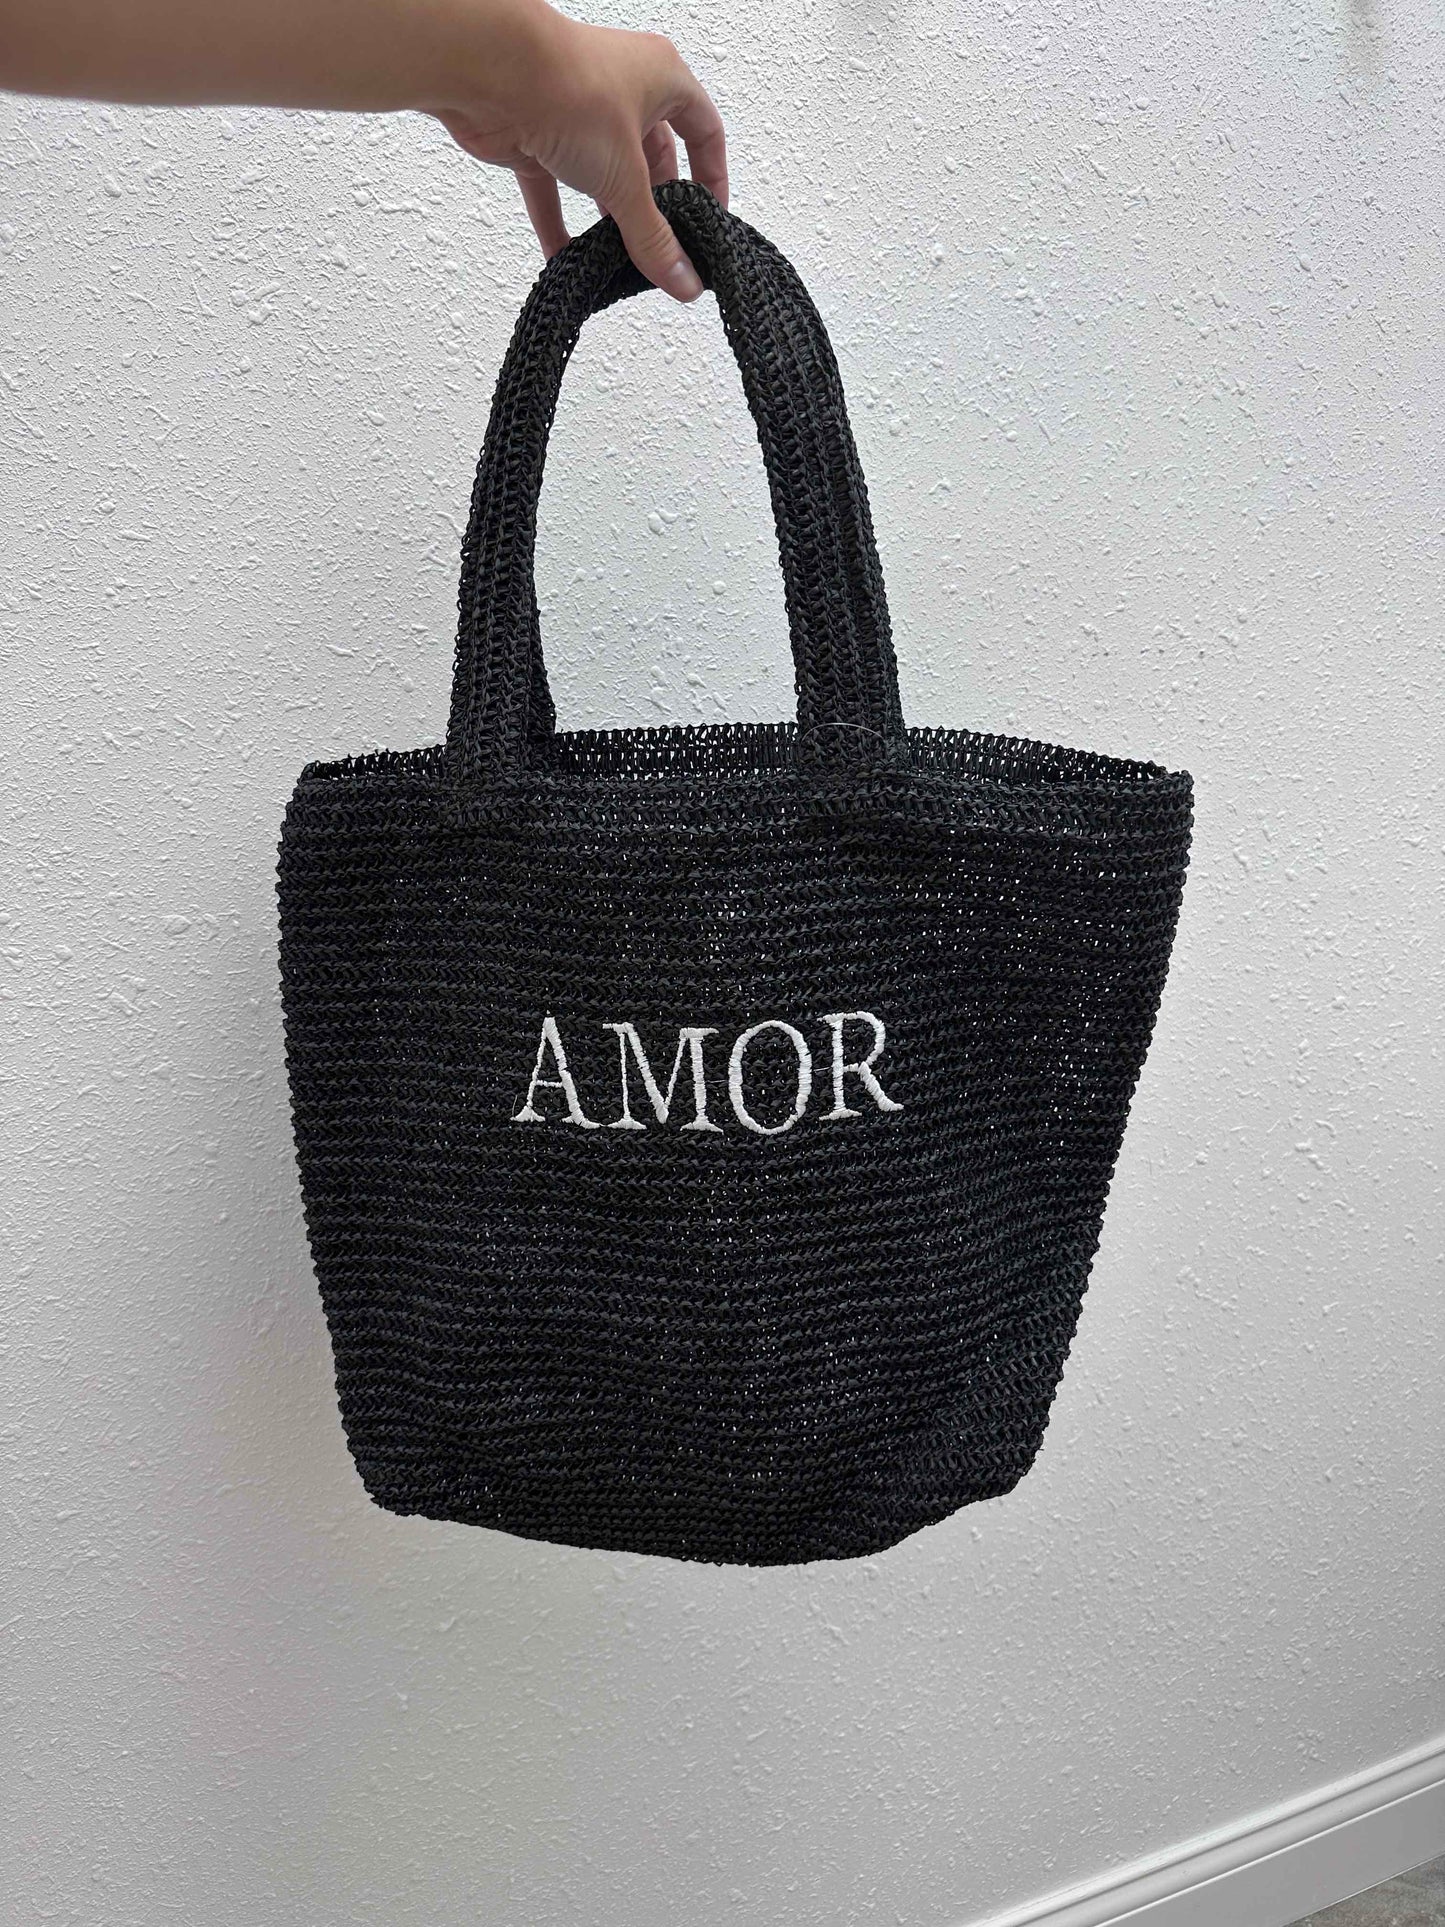 Amor Crochet Bag